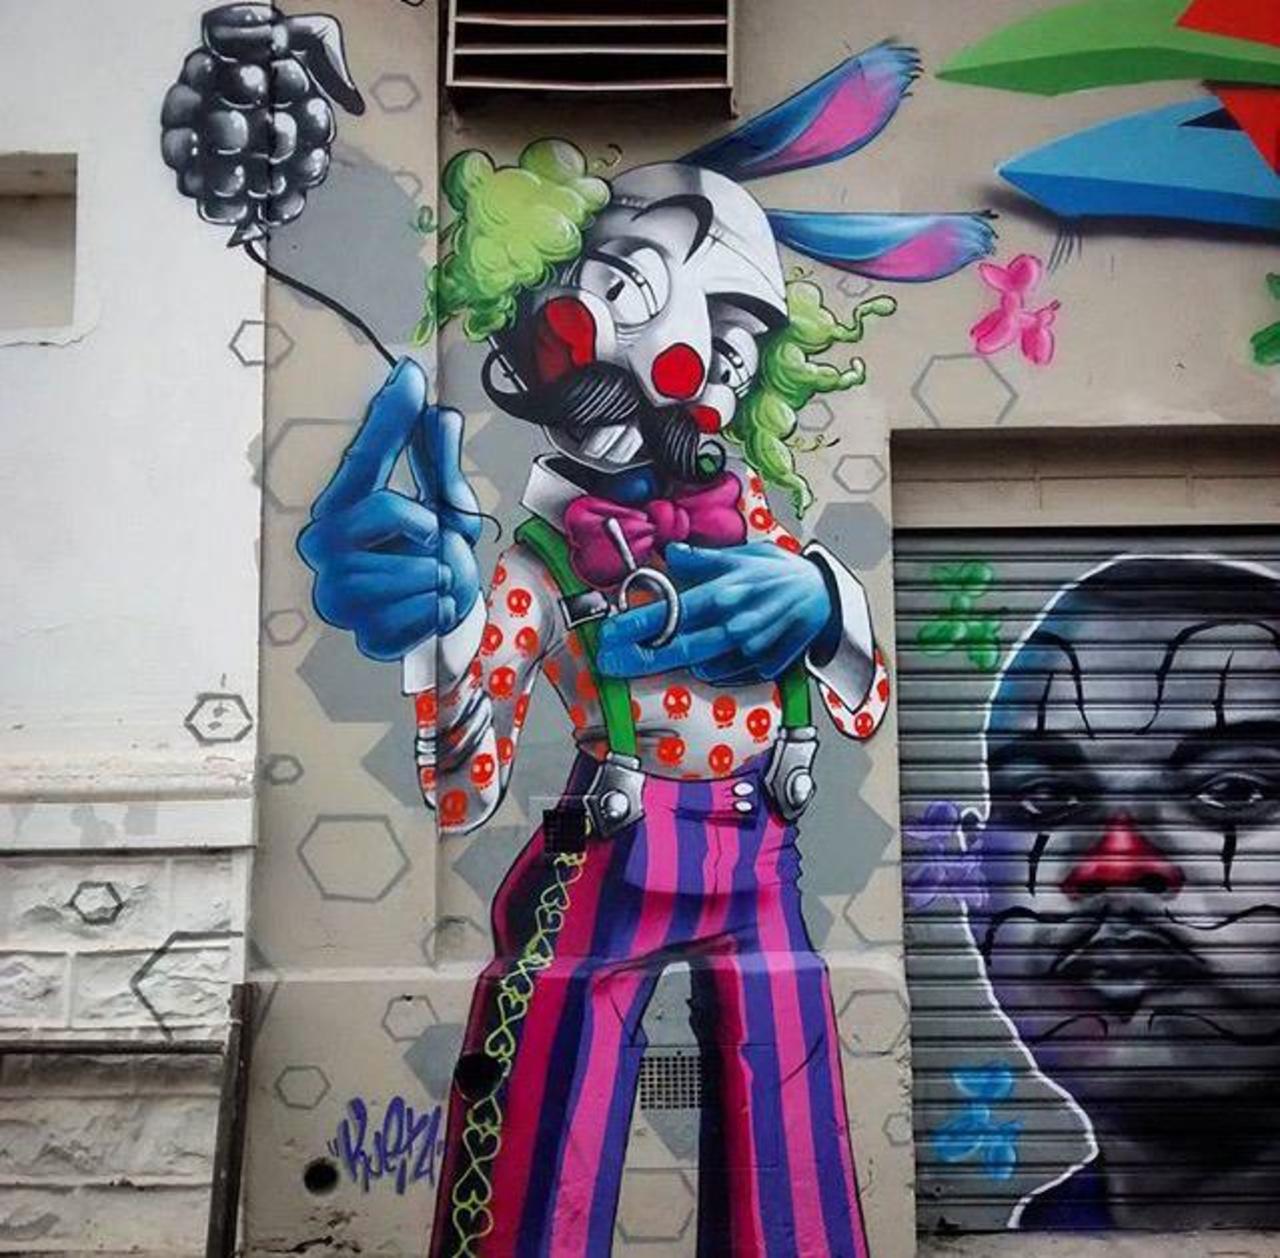 JewelNiles1: New Street Art by Karen Kueia 

#art #graffiti #mural #streetart http://t.co/tdokEGJi2R